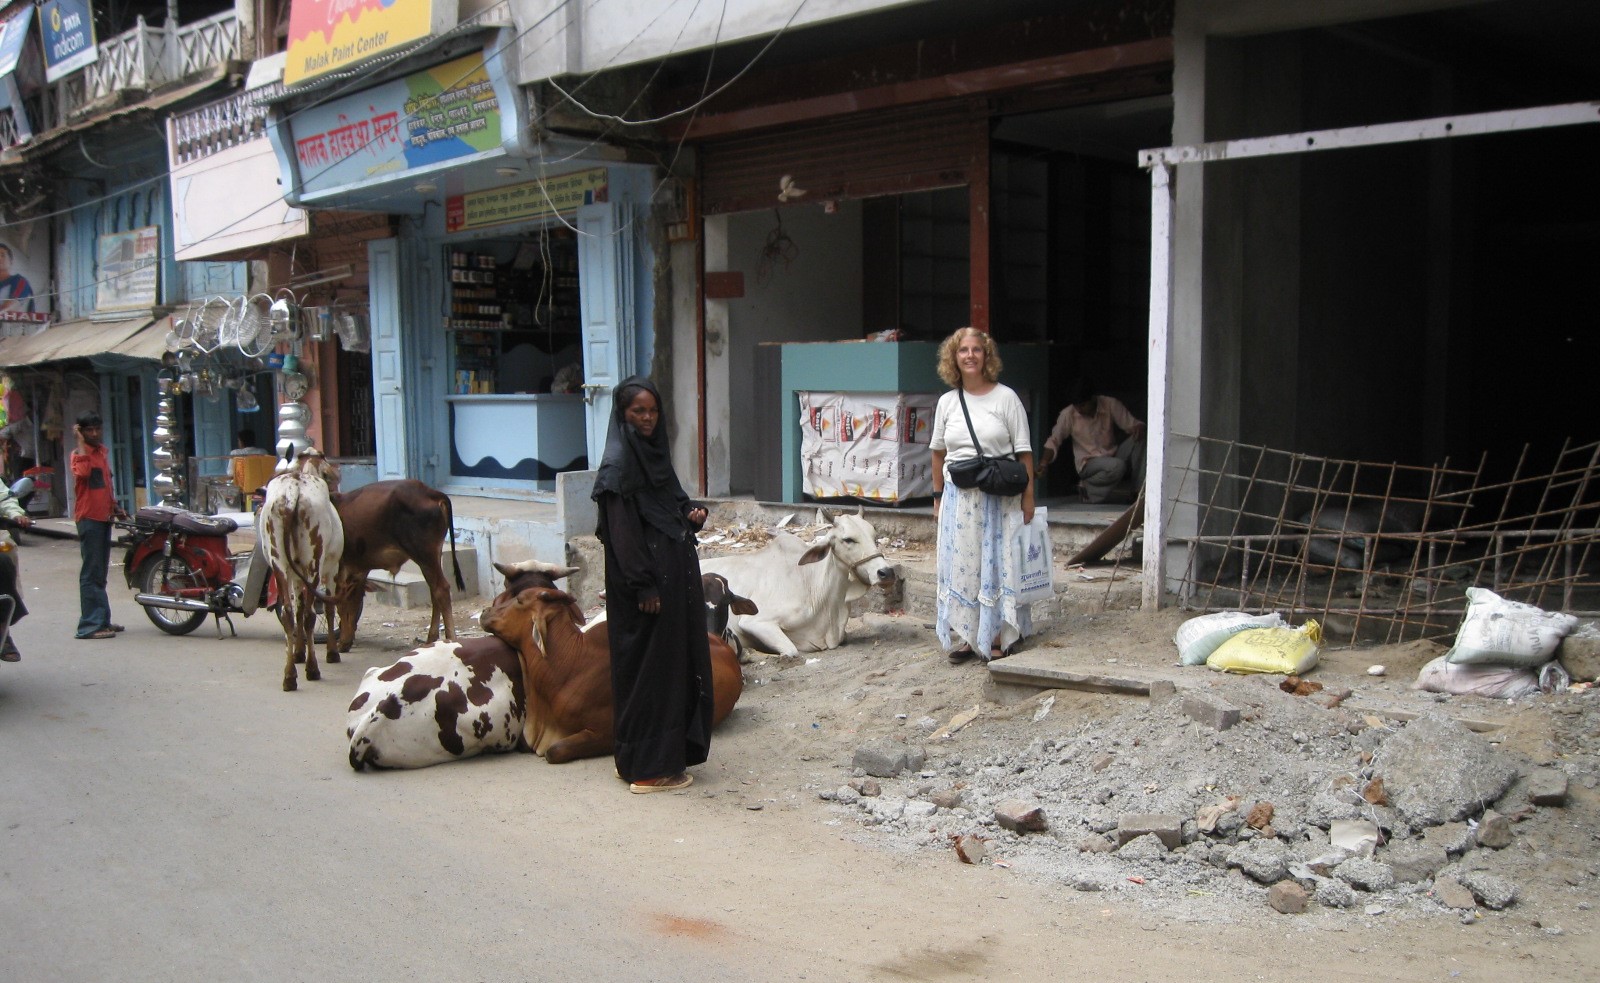 Aquí estoy en India con vacas que descansan tranquilas.